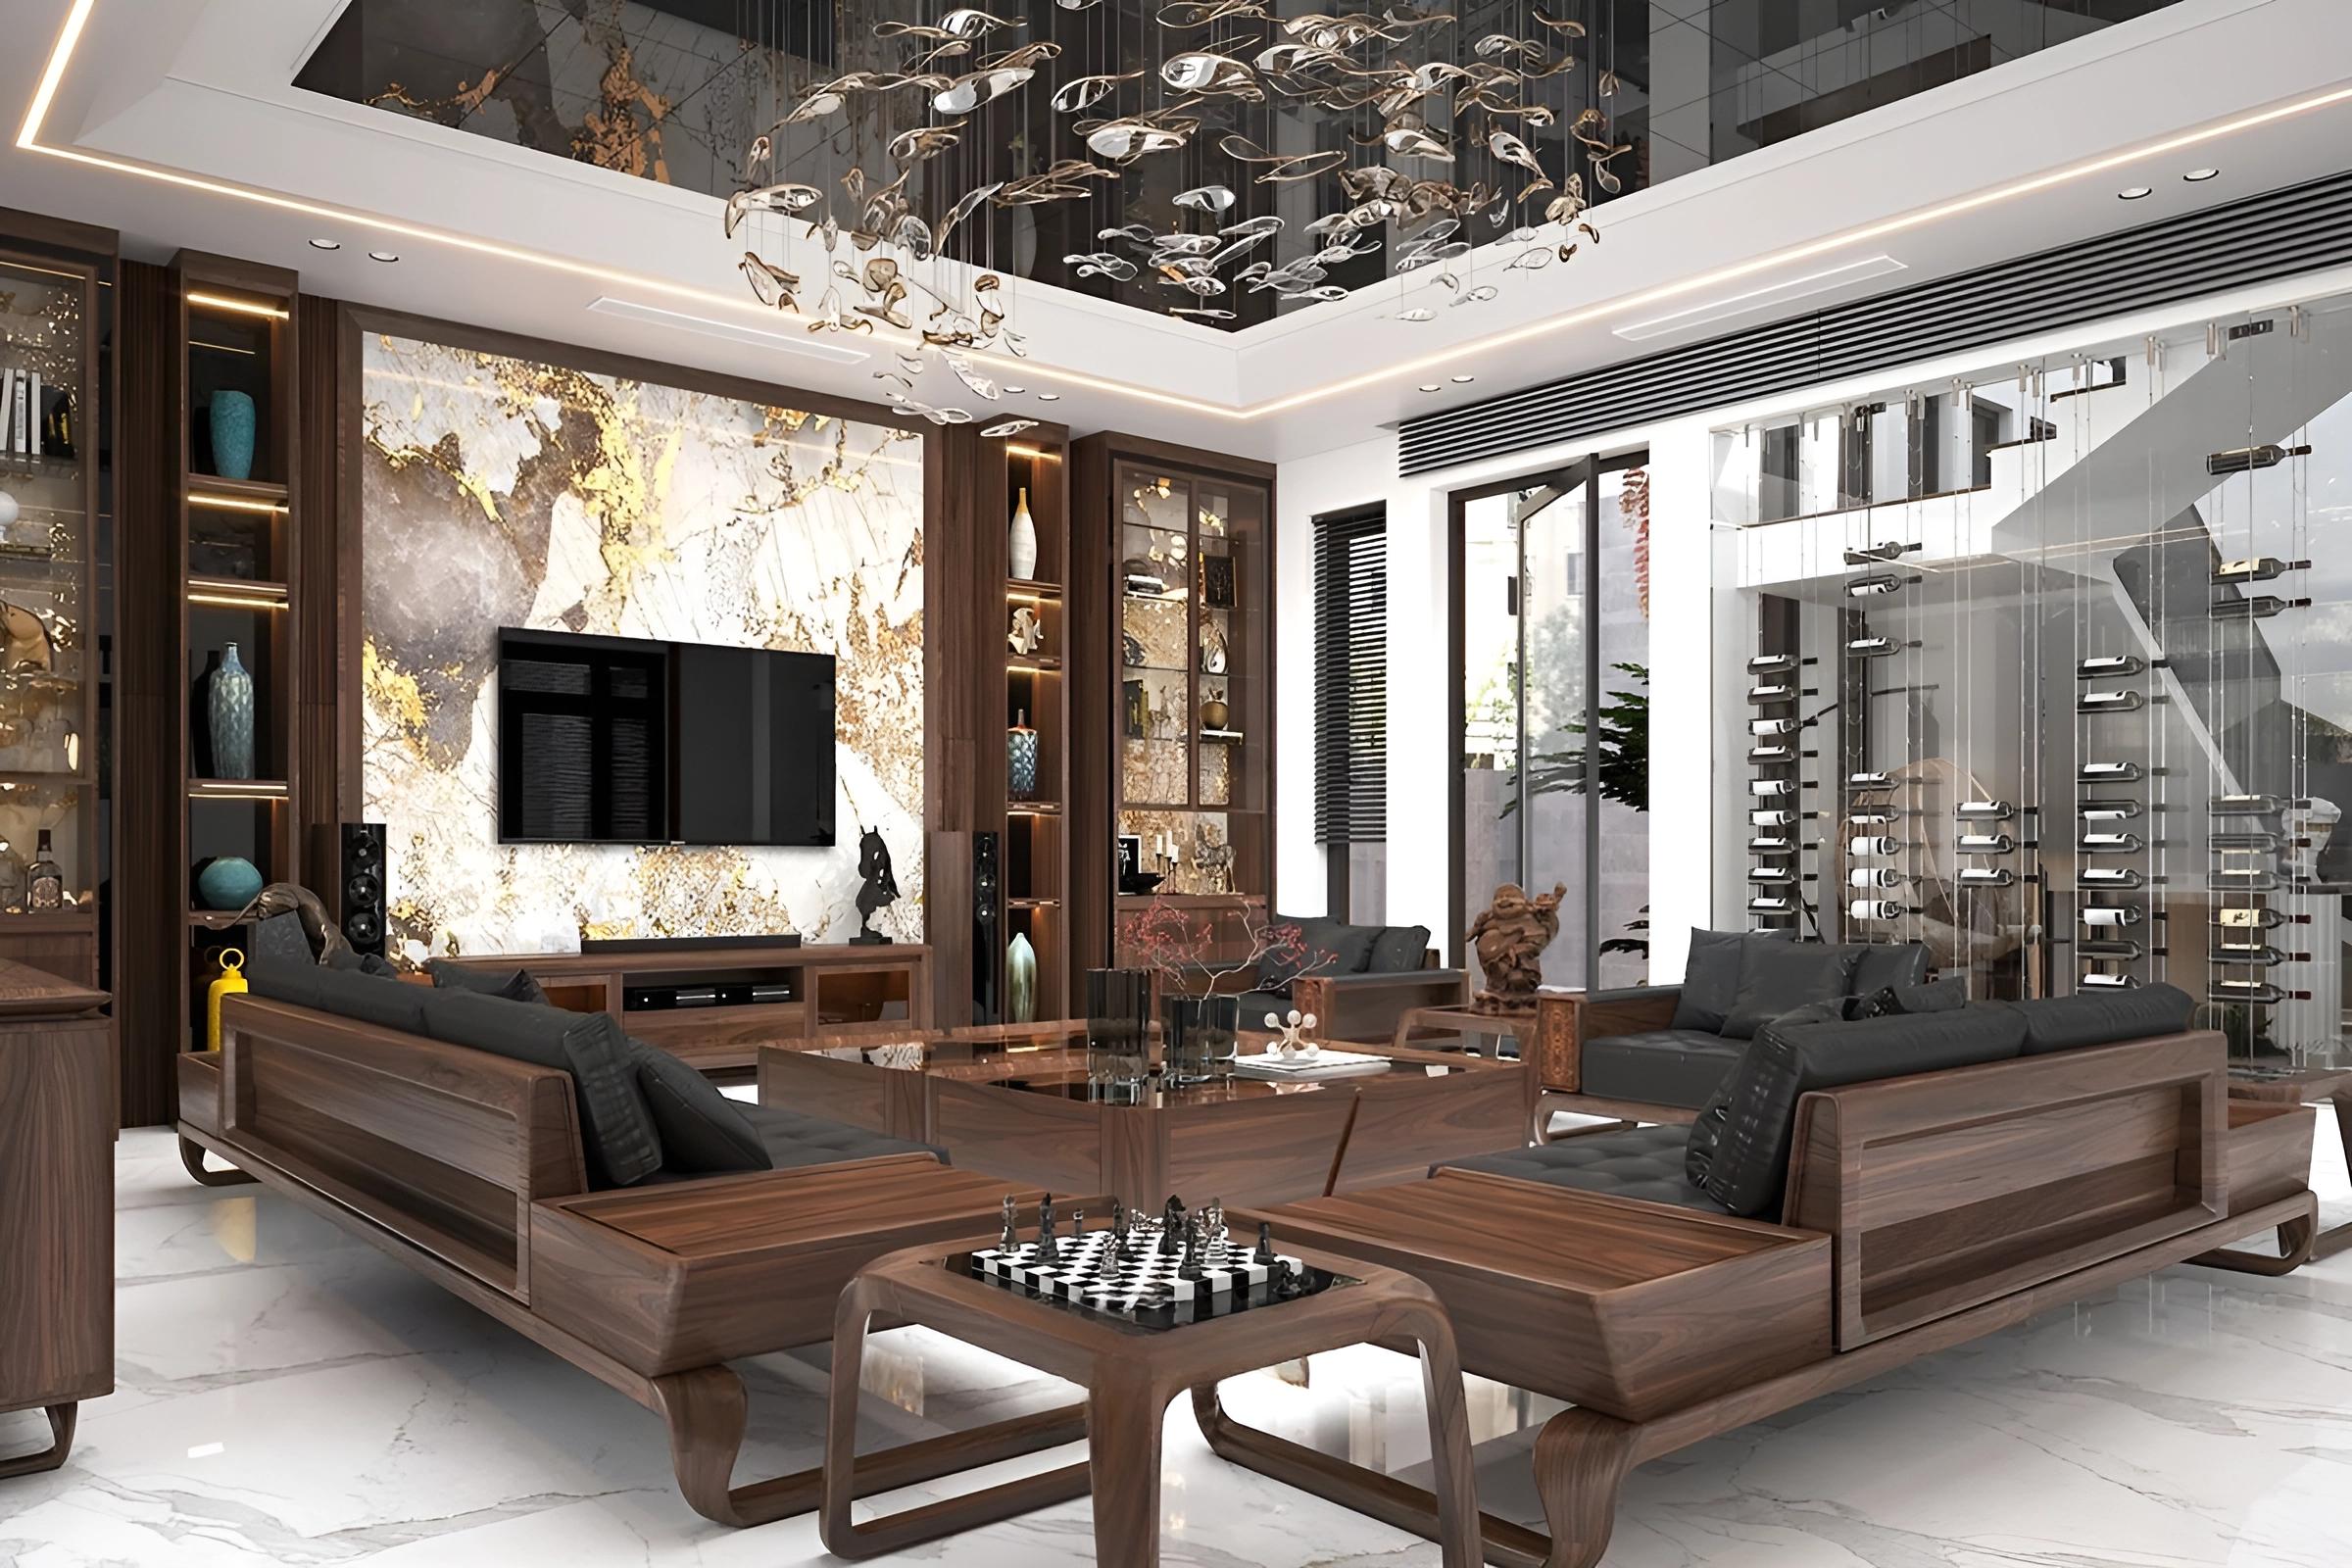 Phòng khách Luxury đề cao tính tinh xảo trong từng thiết kế